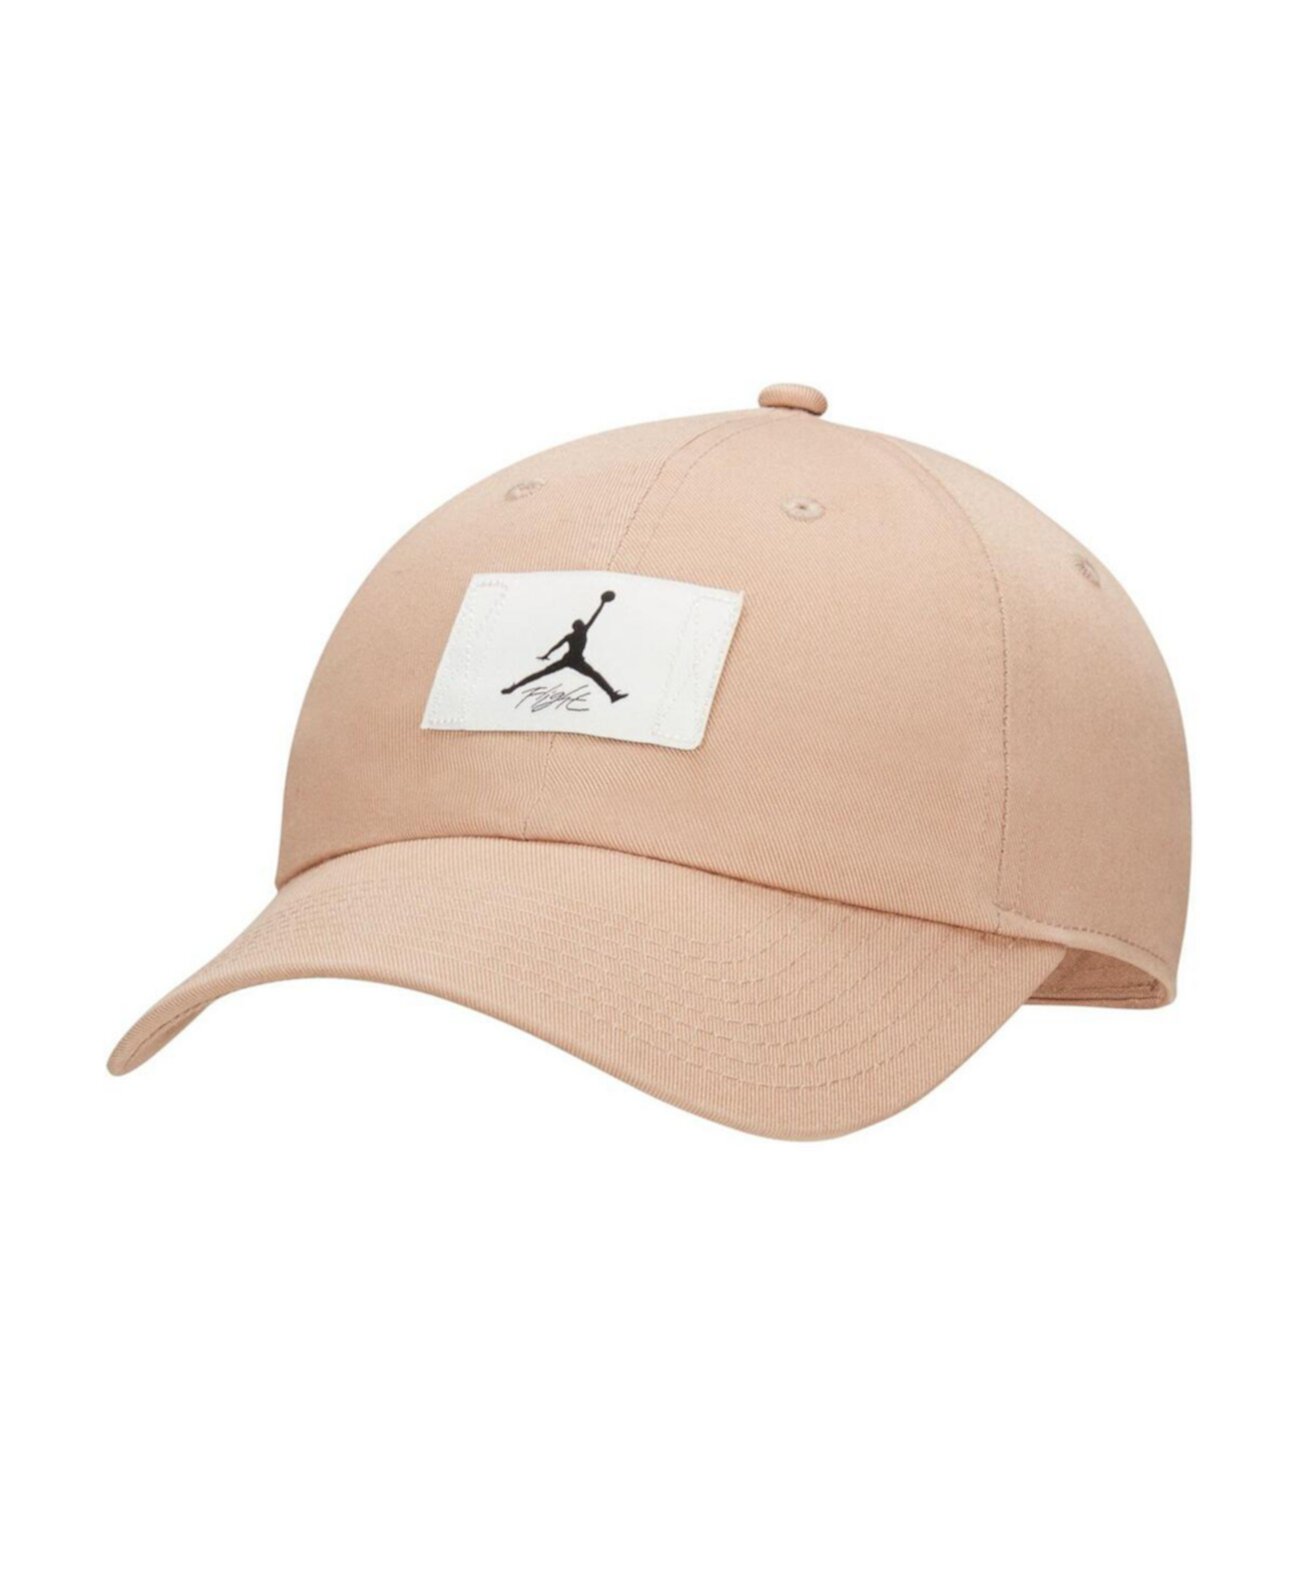 Мужская светло-коричневая регулируемая шляпа с логотипом Jordan